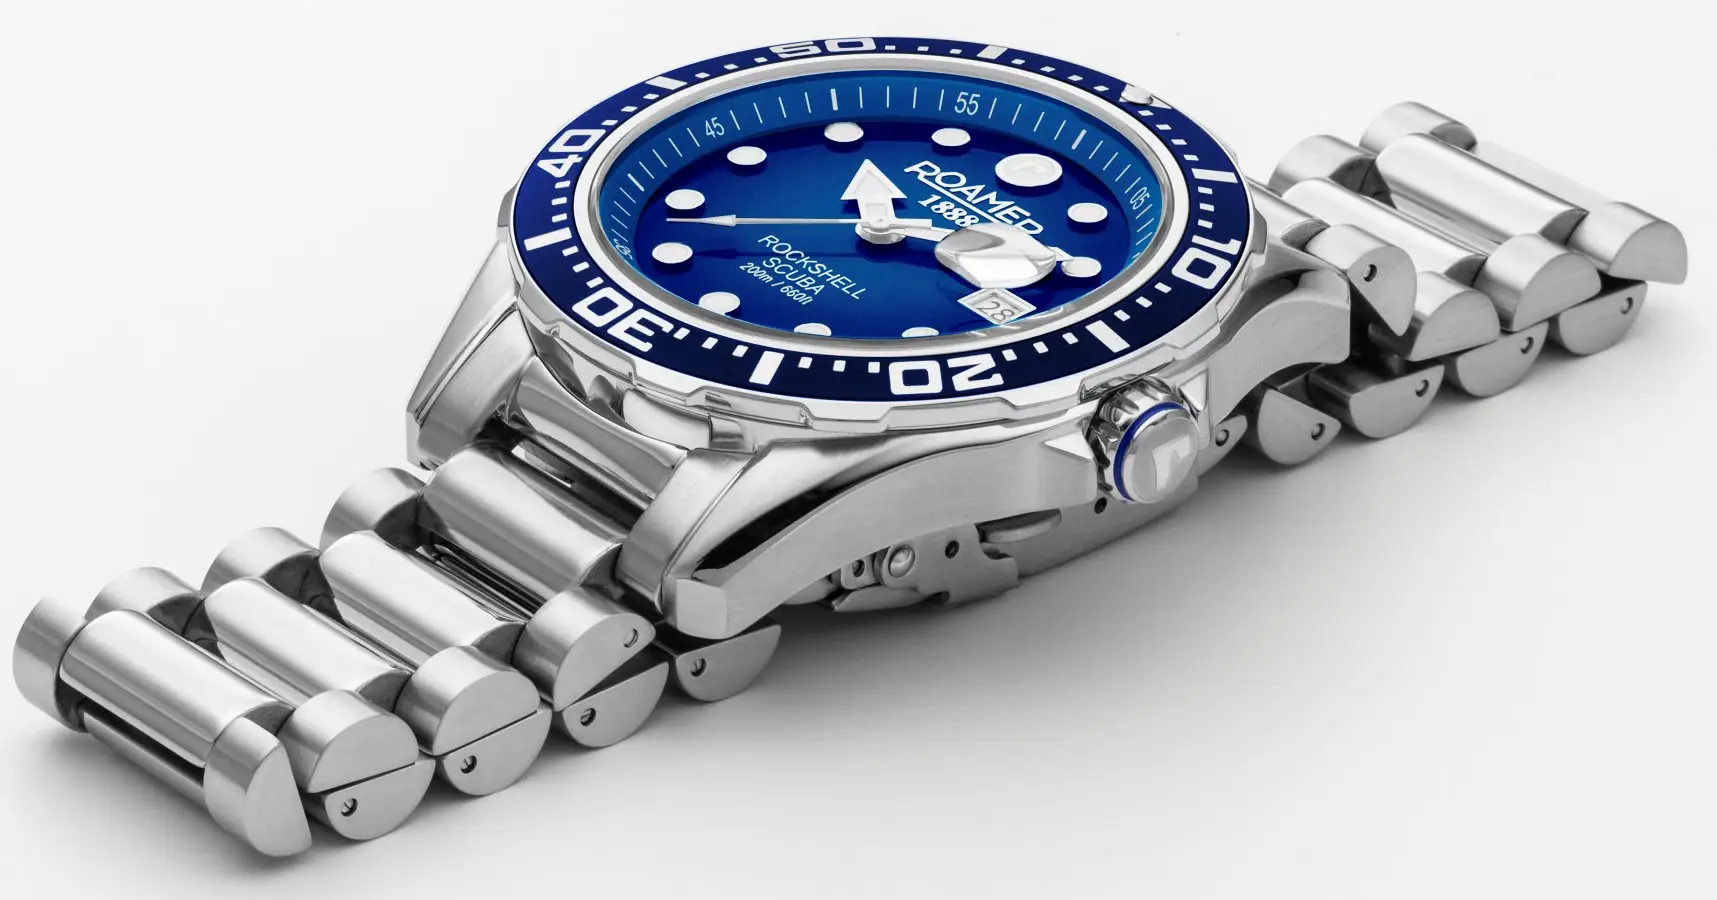 Roamer Rockshell Mark III Scuba - duży, sportowy zegarek. Typowy diver